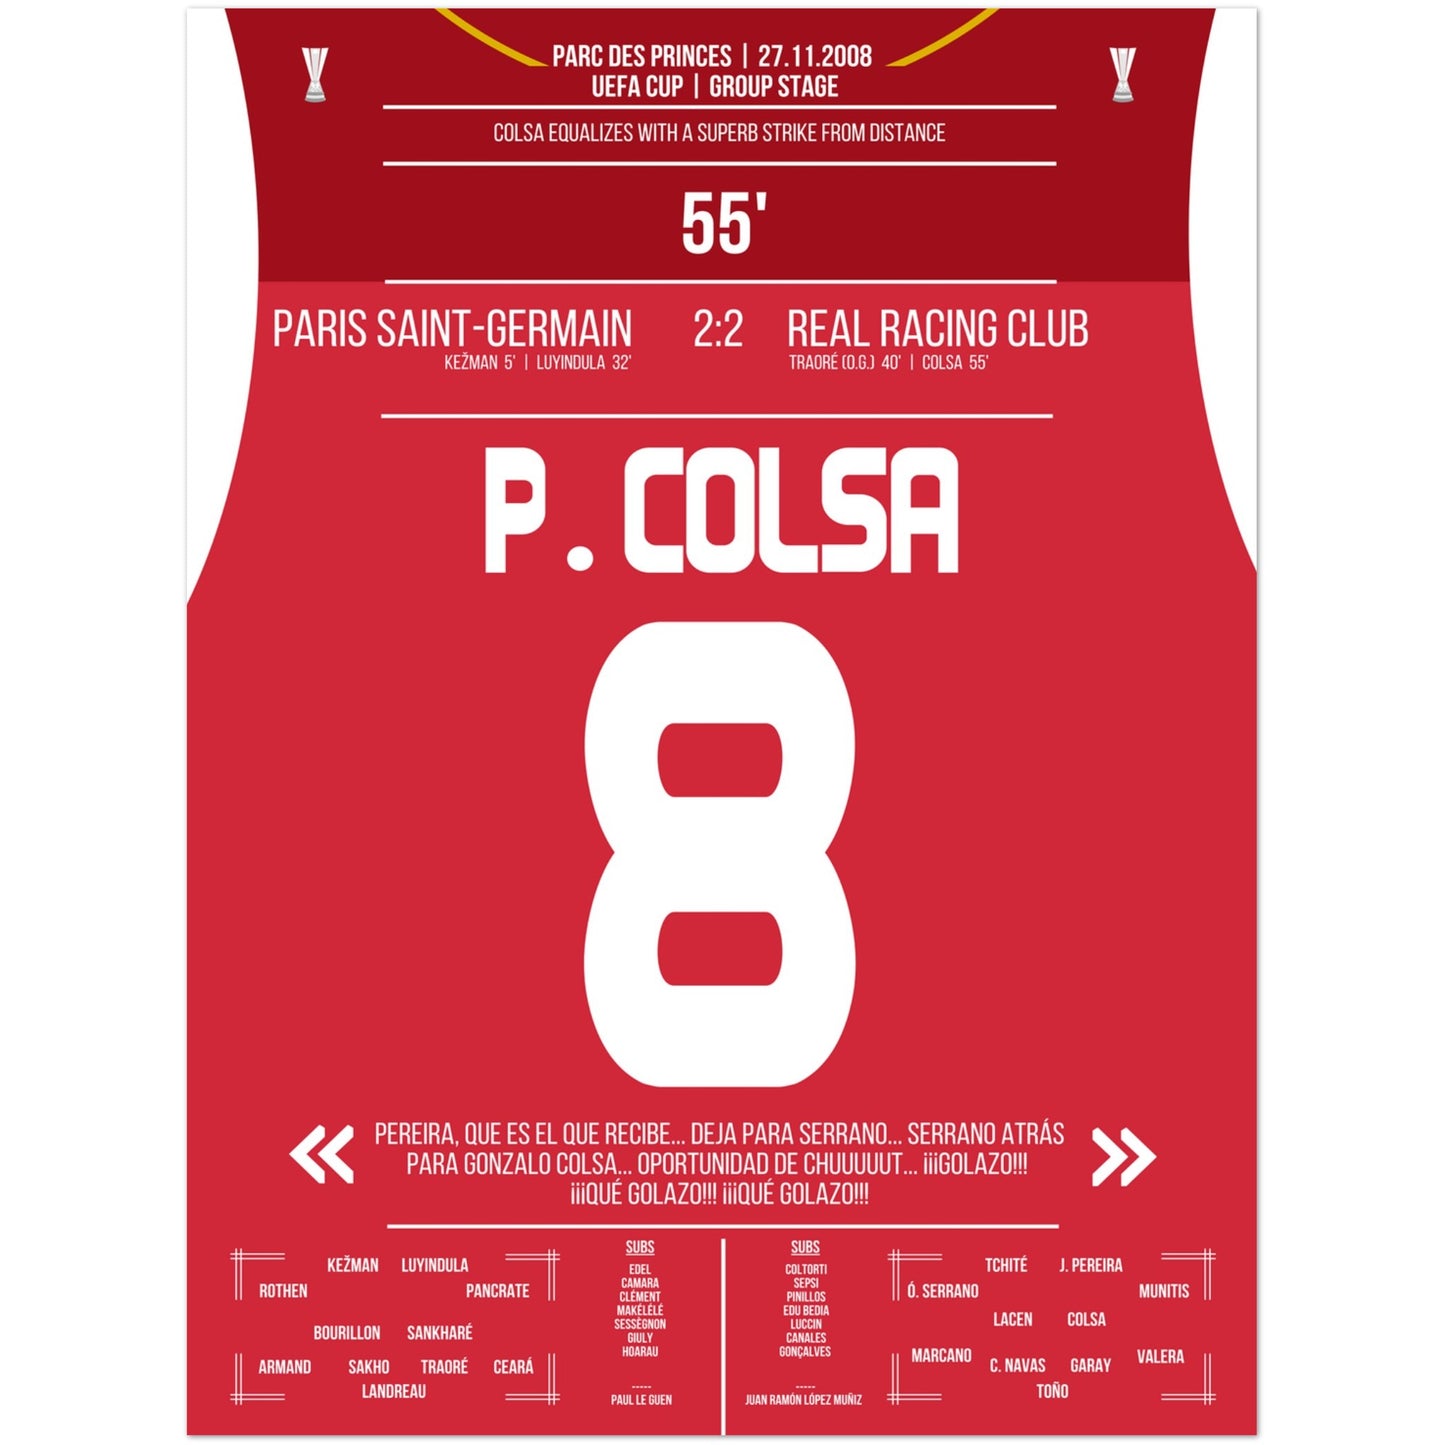 Colsa's Traumtor aus der Distanz gegen PSG in 2008